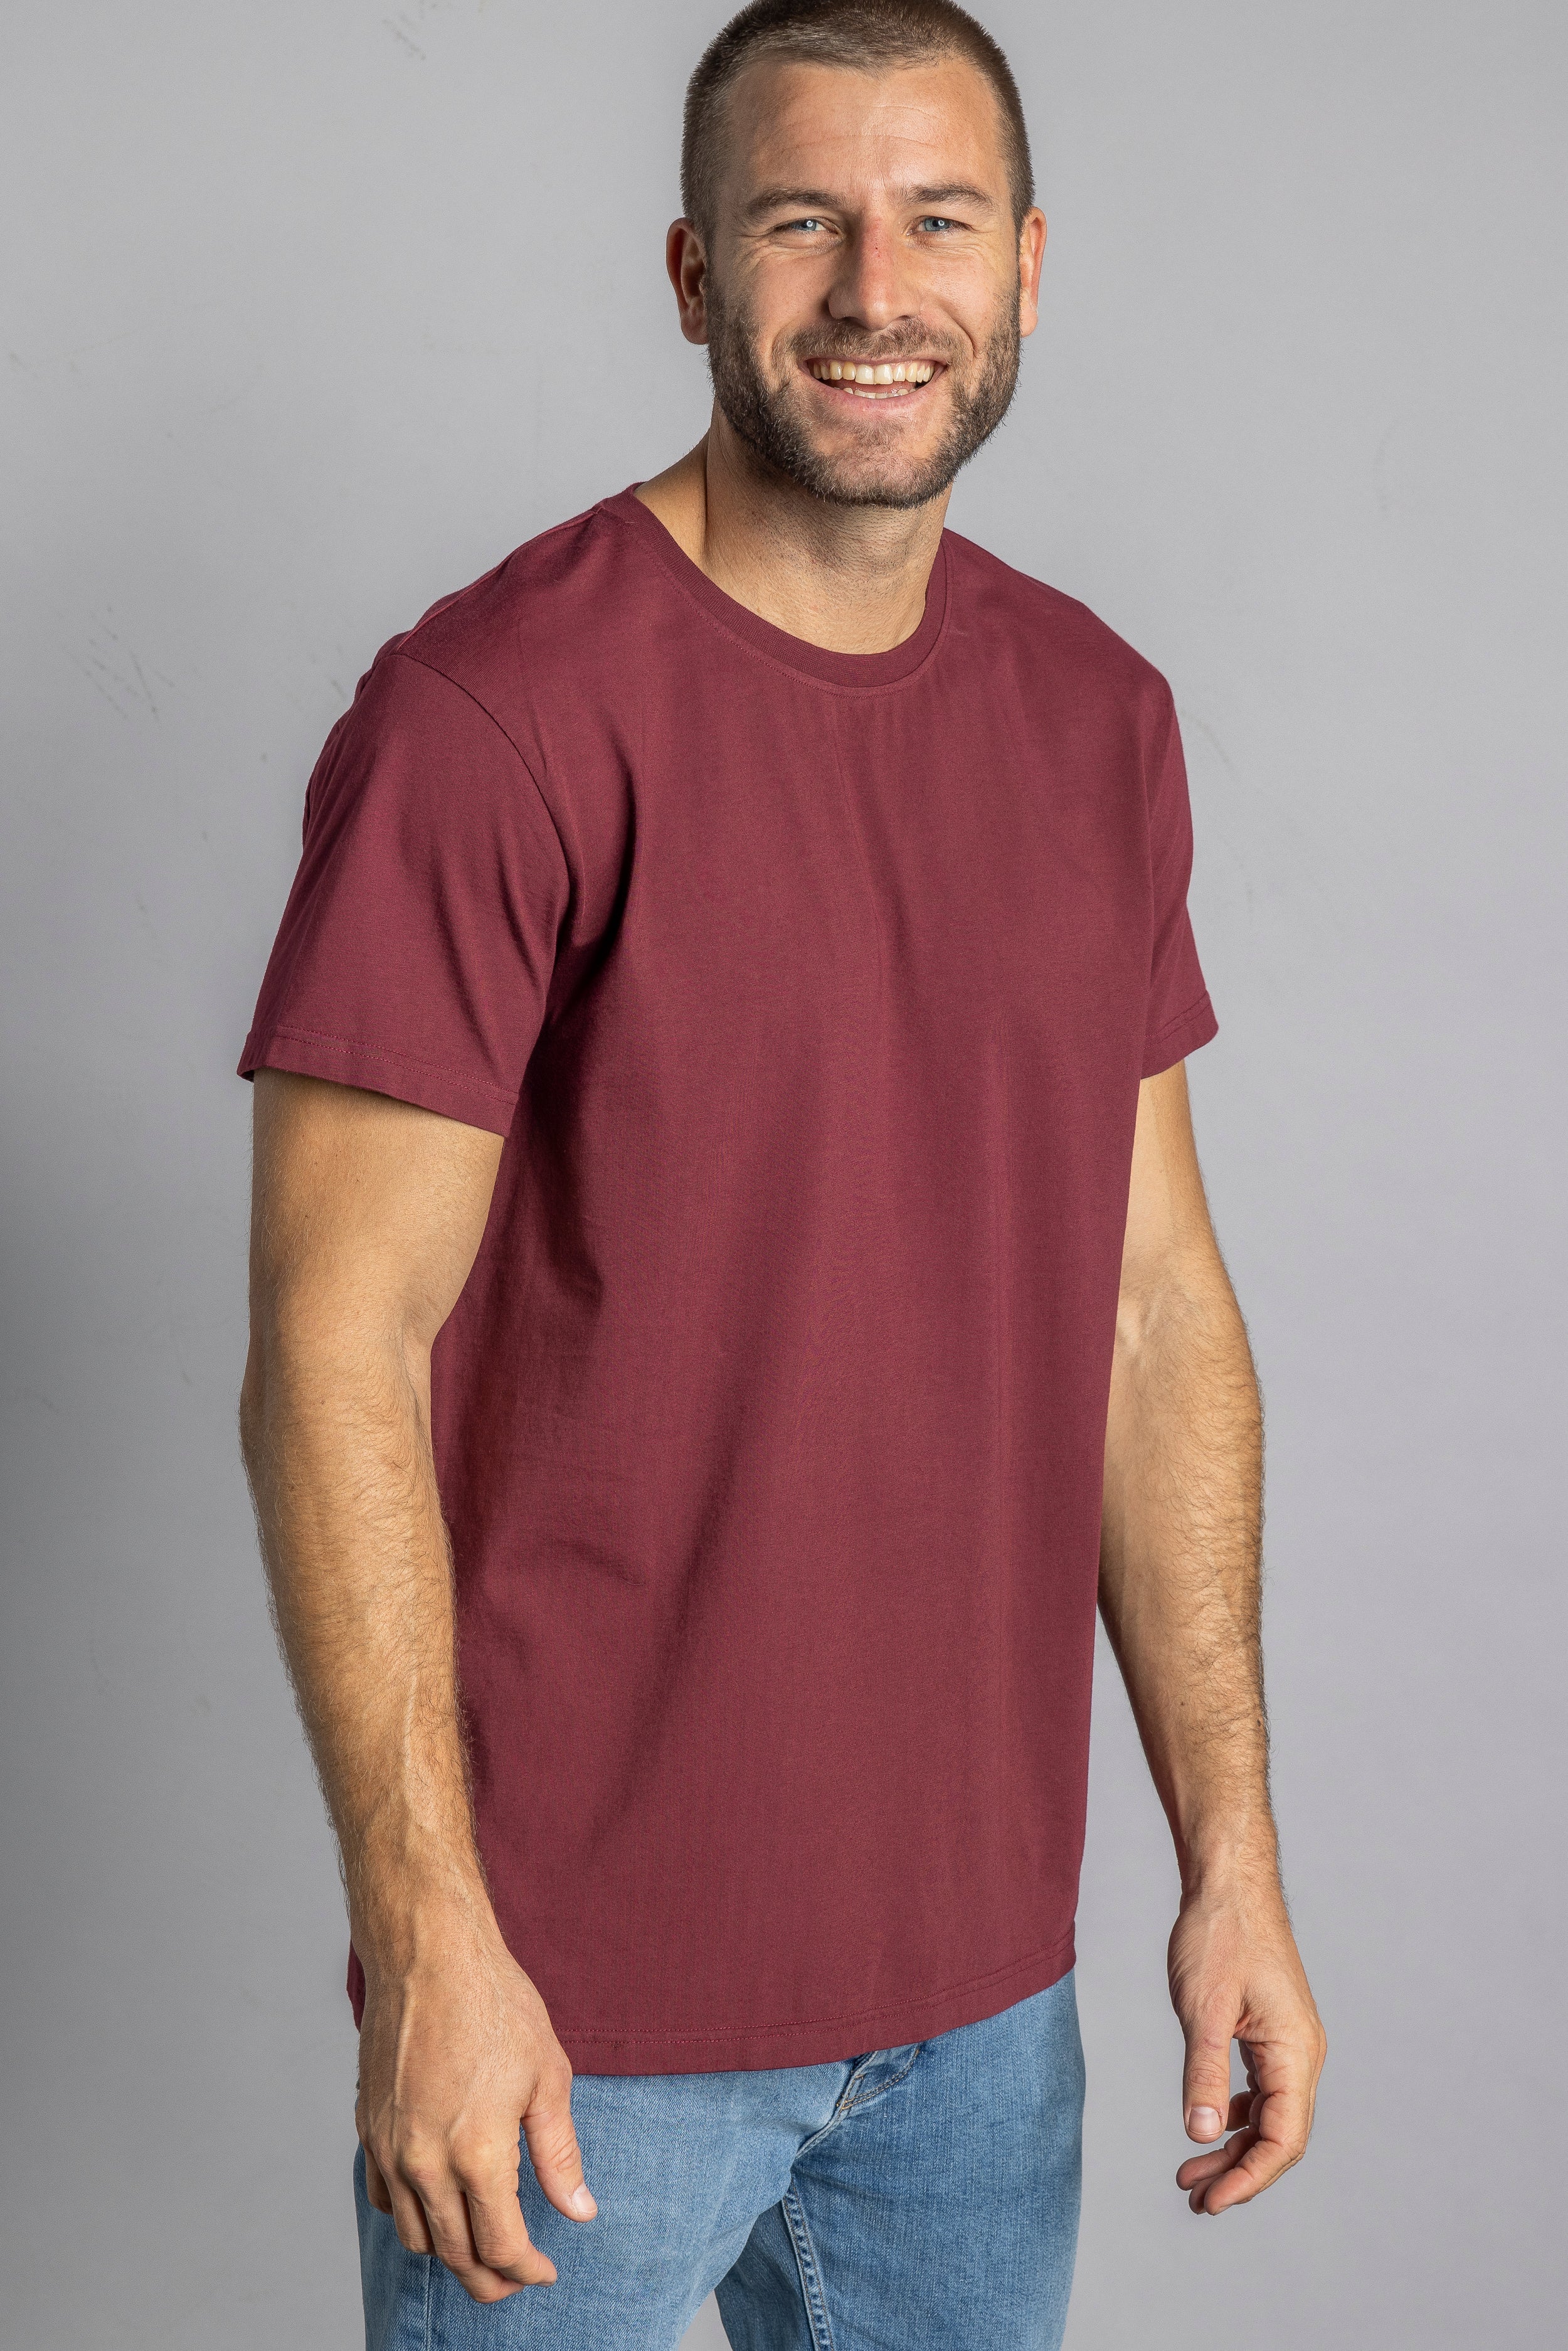 Dunkelrotes T-Shirt Premium Blank Standard aus 100% Bio-Baumwolle von DIRTS